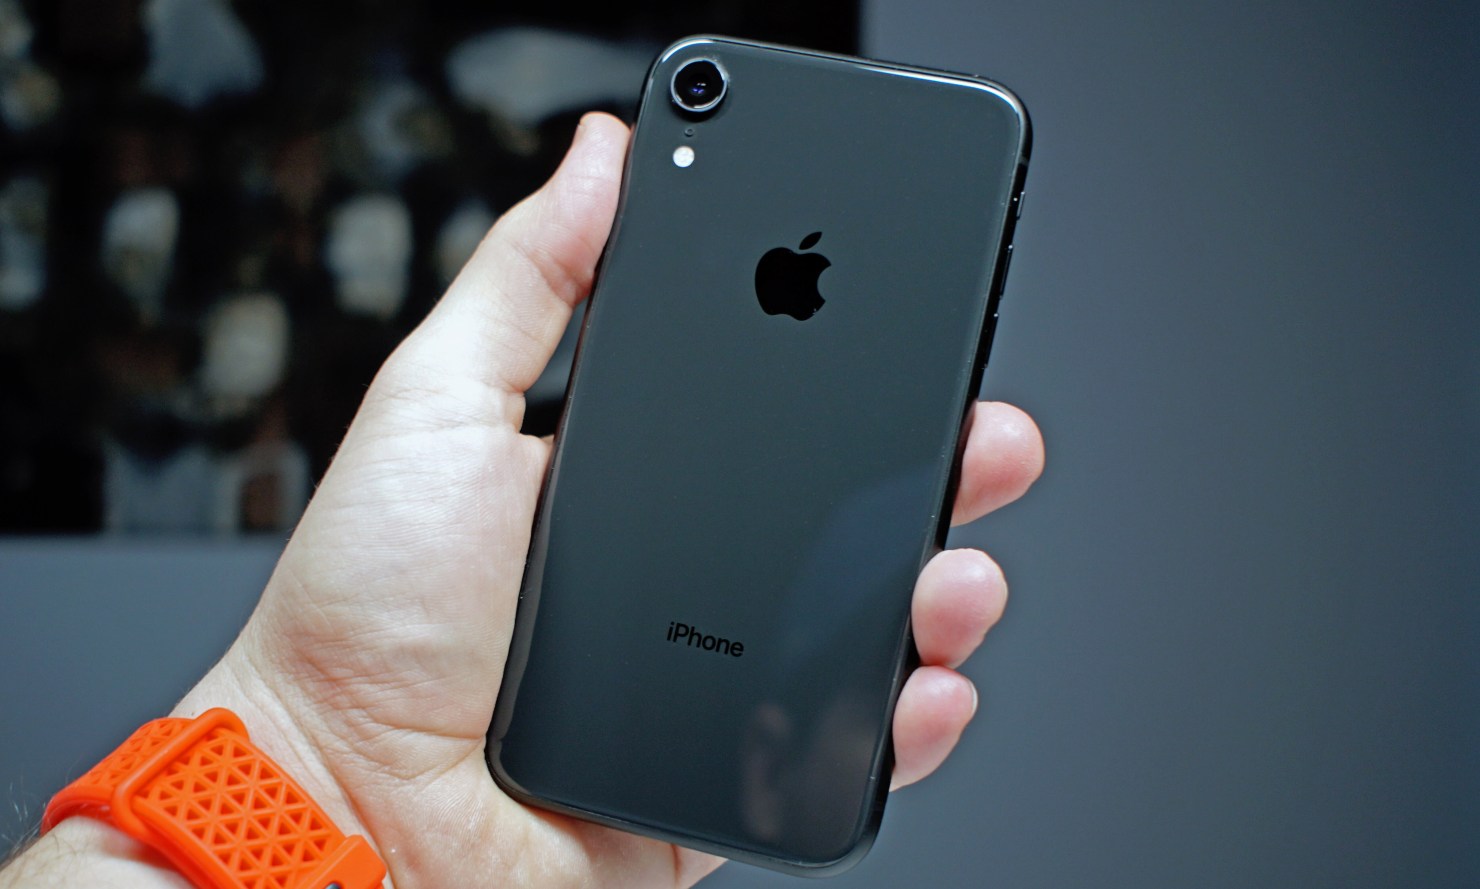 iPhone XR Jadi Ponsel Terpopuler Tahun 2019 - Teknologi.id